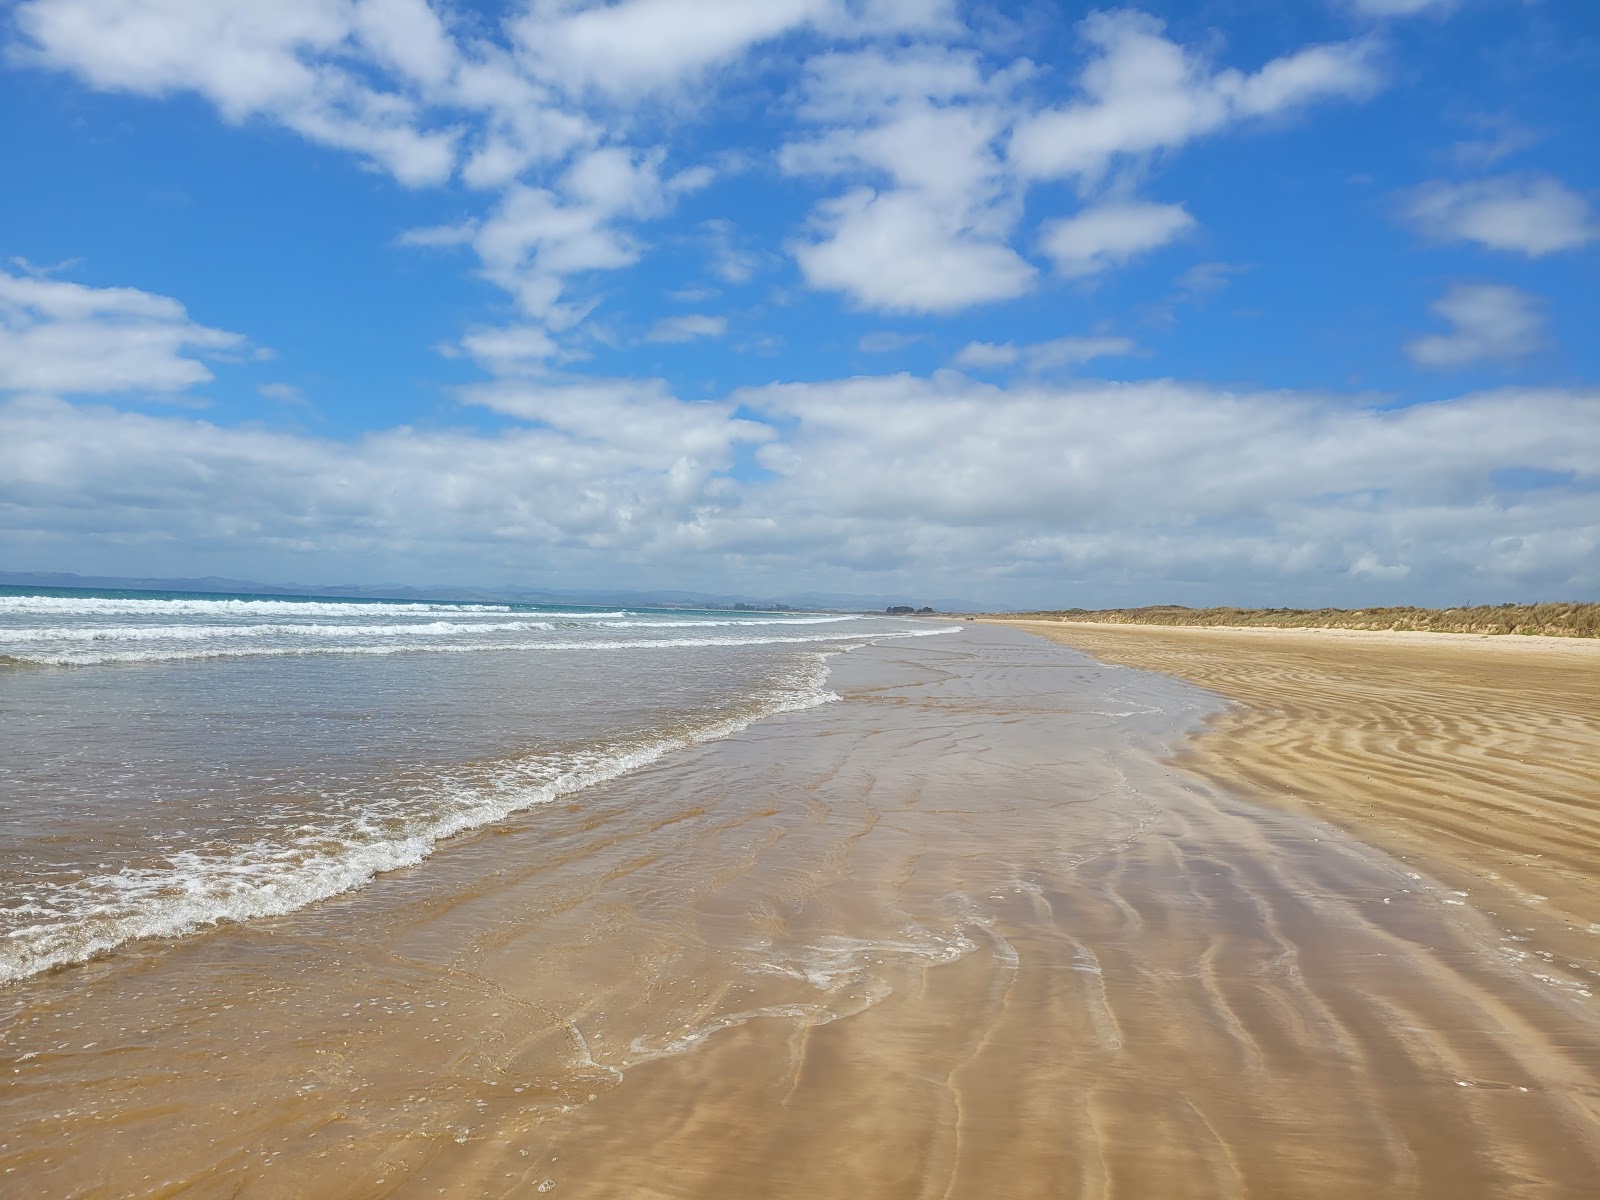 Tokerau beach'in fotoğrafı parlak kum yüzey ile